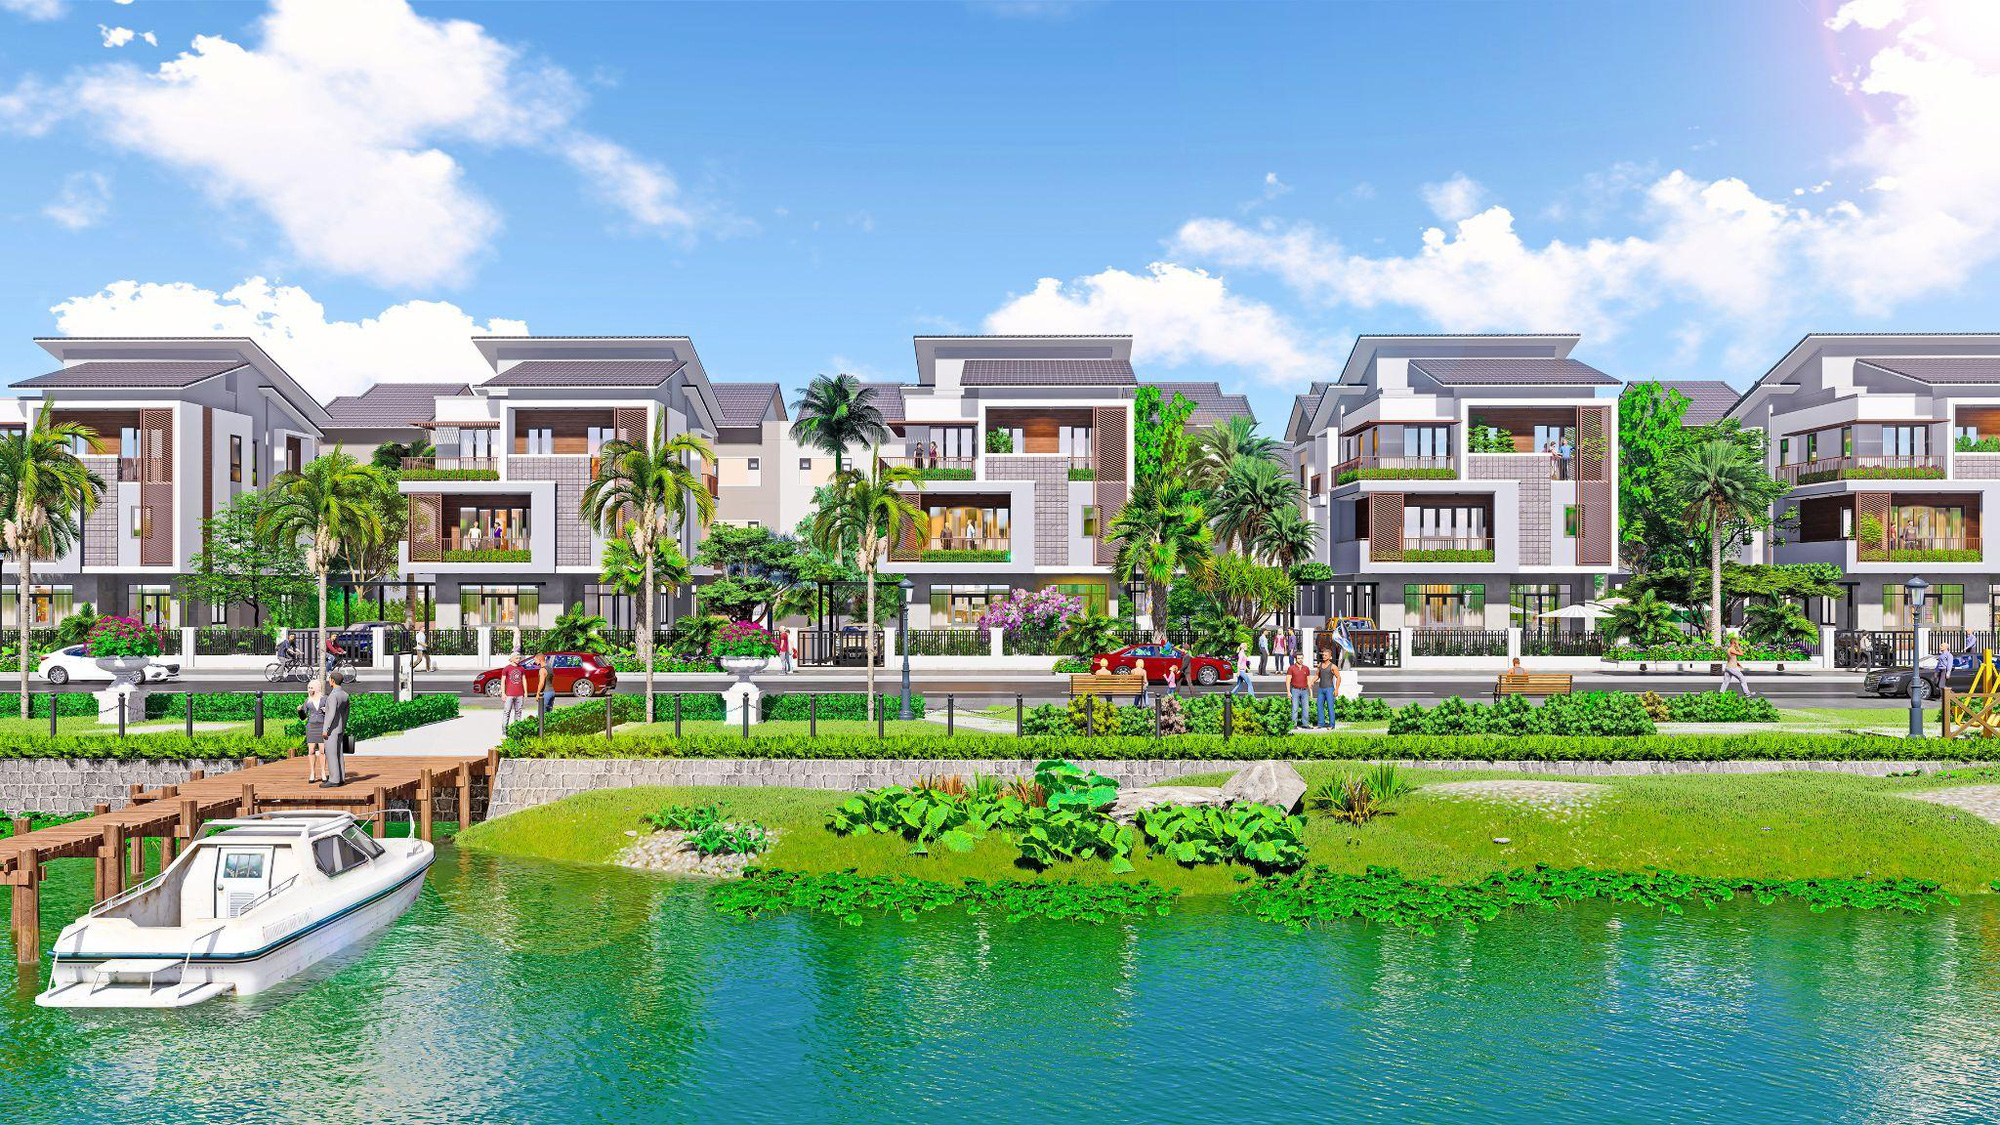 Centa Riverside - Mảnh ghép hoàn chỉnh của đại đô thị Bắc Ninh - Ảnh 1.